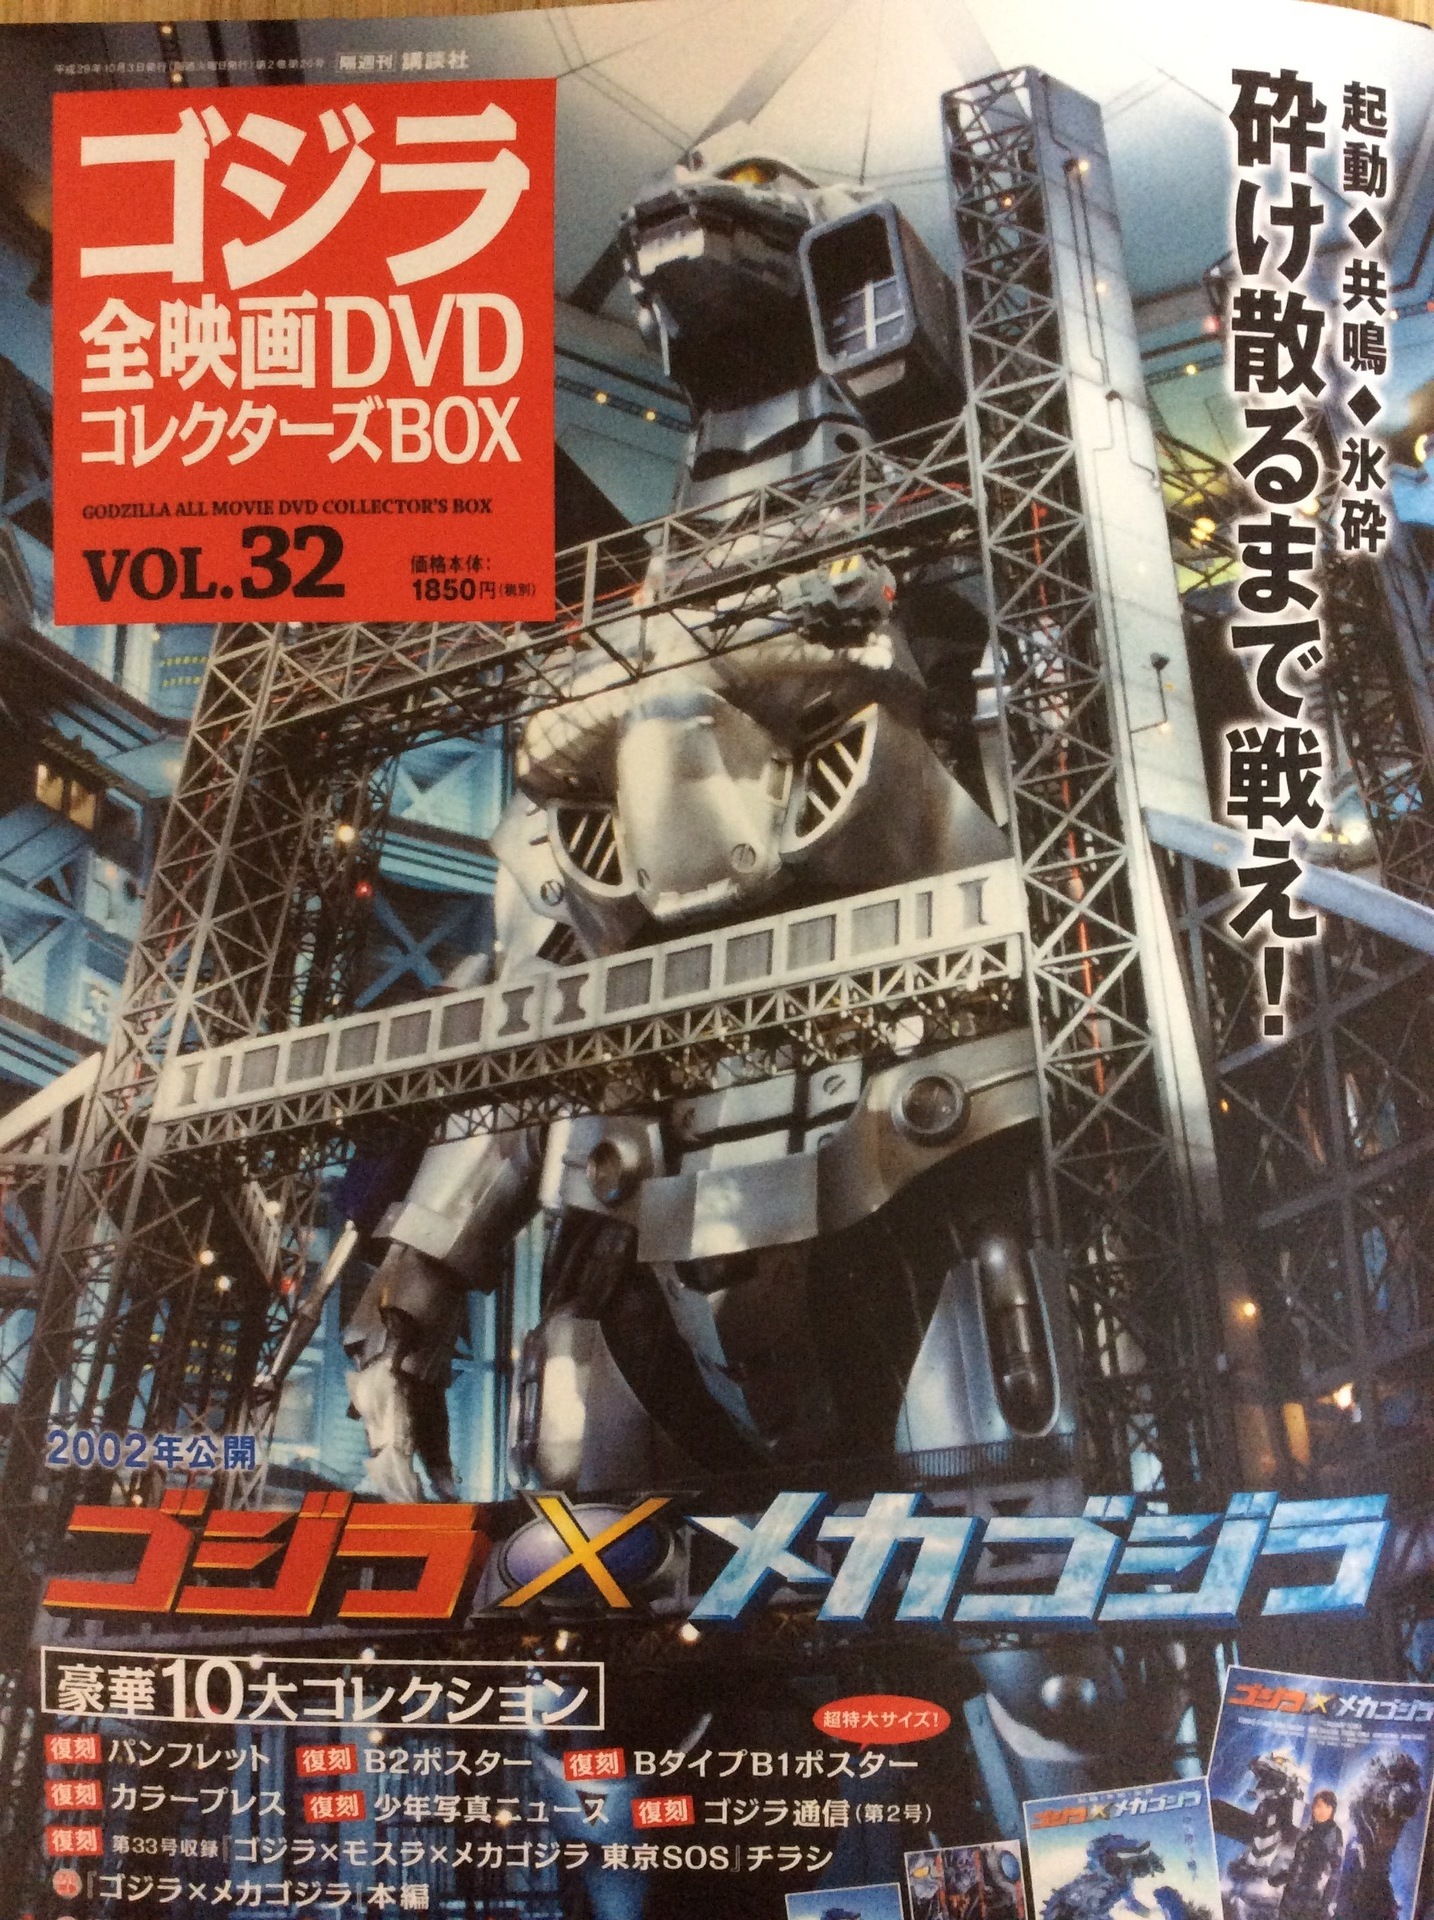 ゴジラ全映画DVDコレクターズBOX VOL.32」: ぬいぐるみとのピクニック